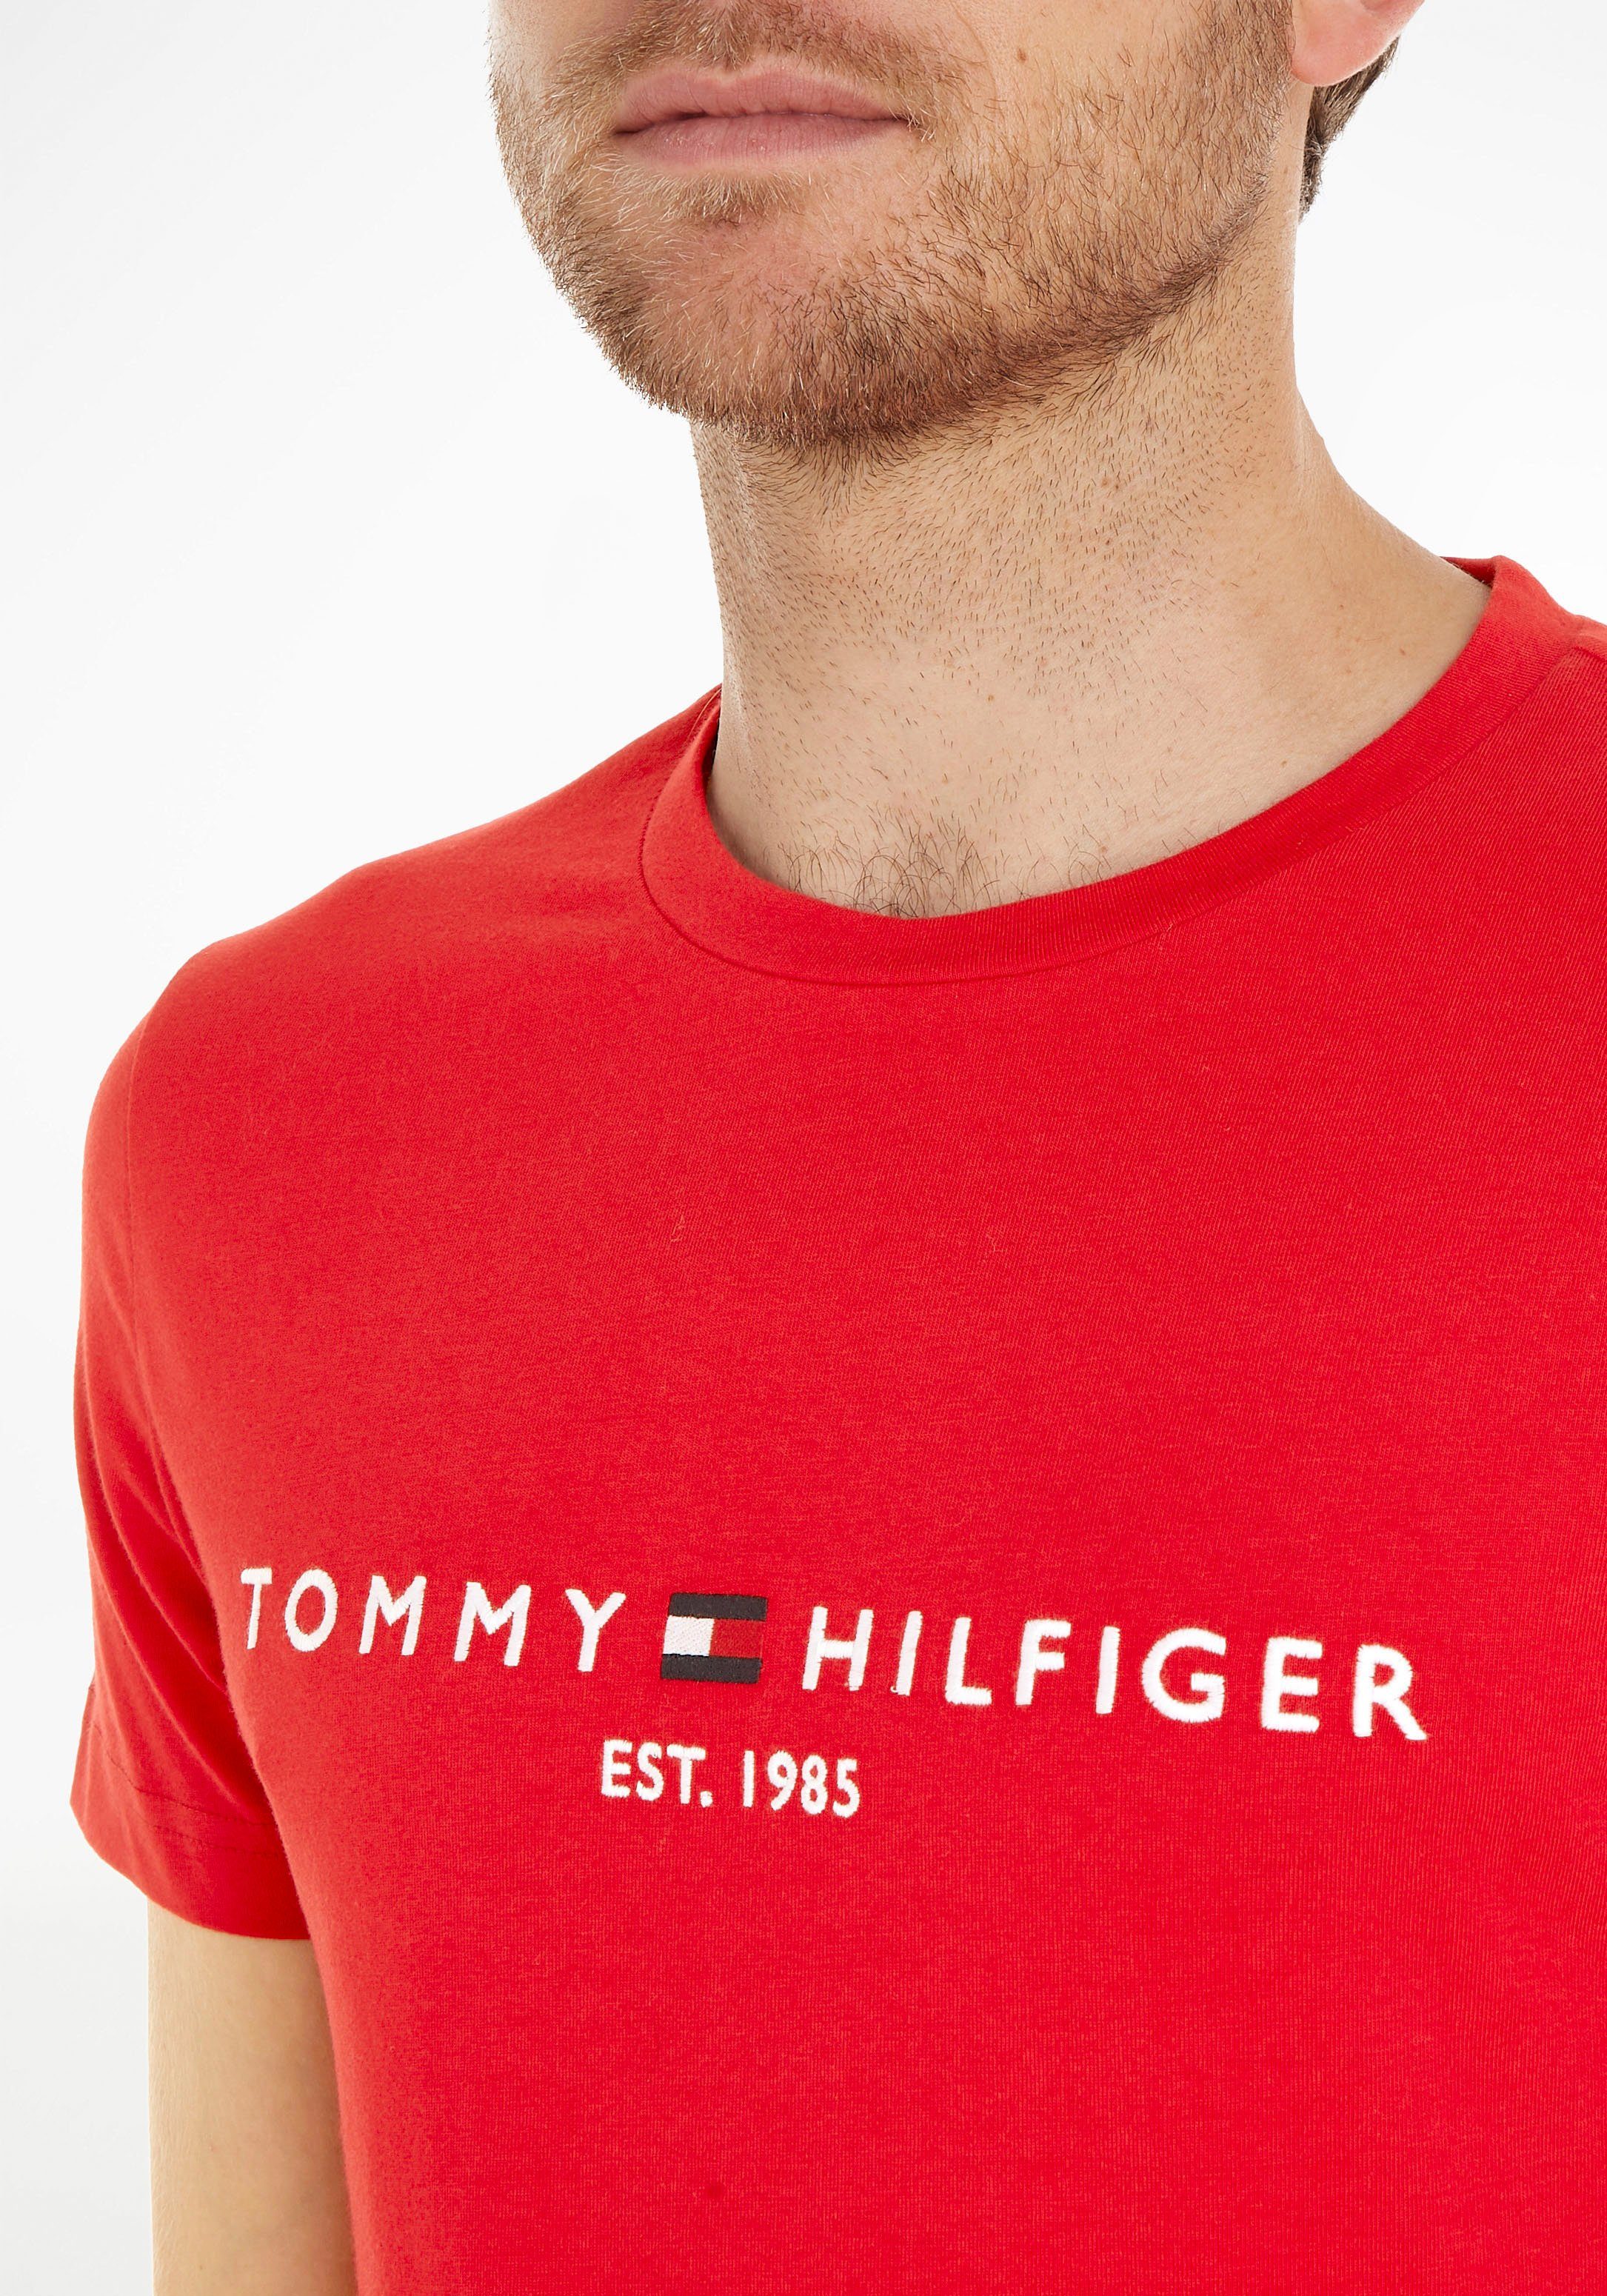 Tommy Hilfiger TOMMY Baumwolle reiner, T-Shirt LOGO rot TEE aus nachhaltiger